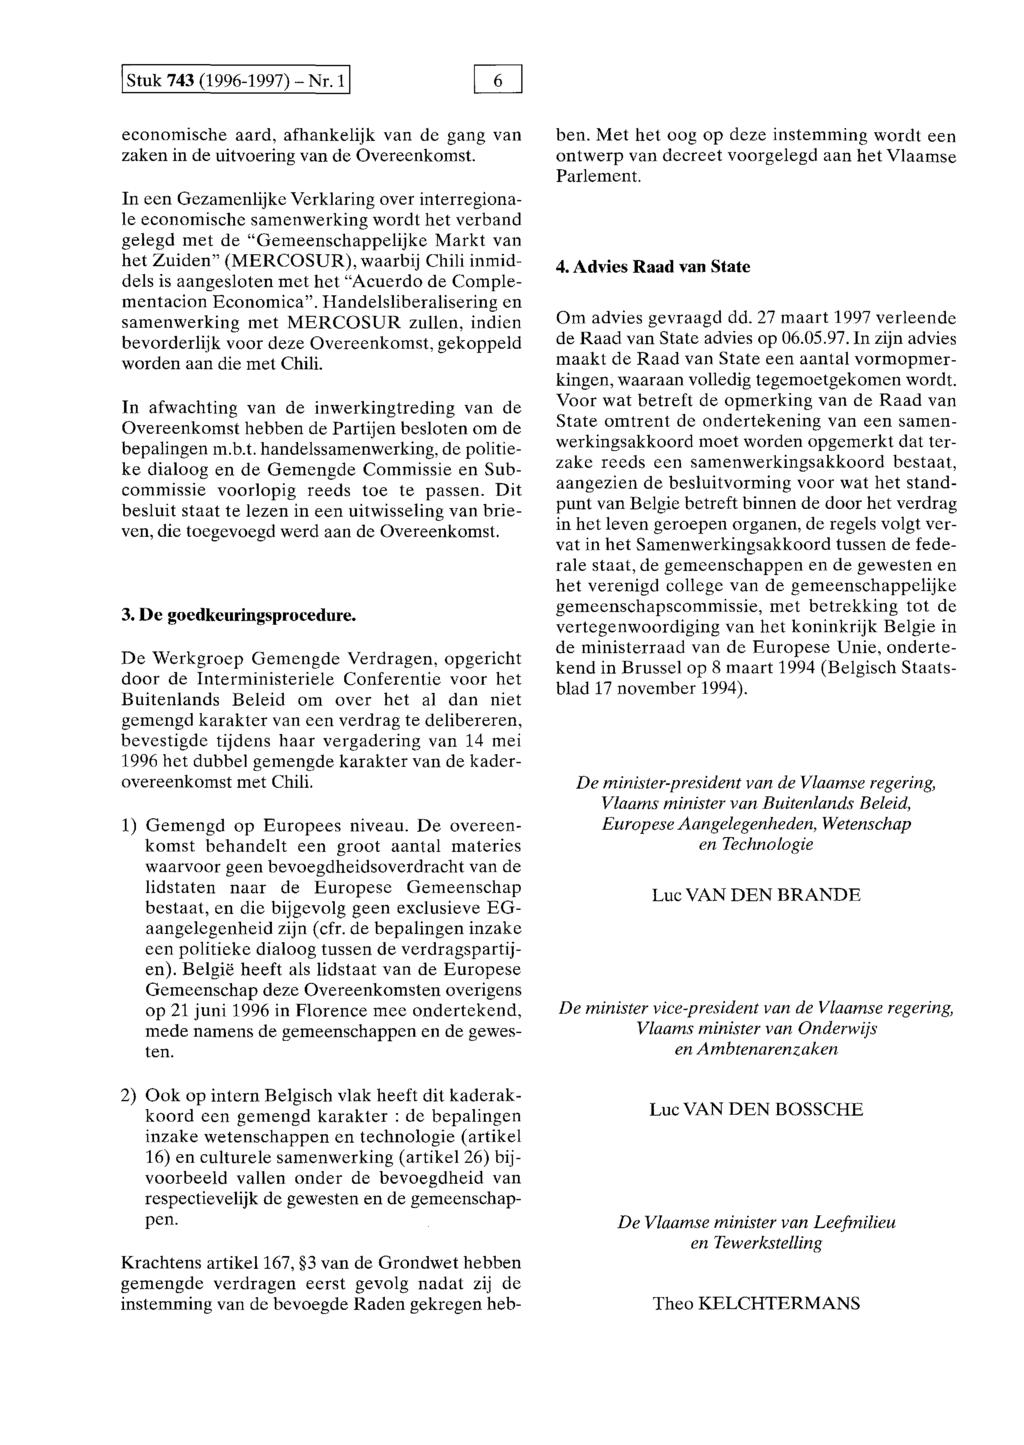 I Stuk 743 (1996-1997) -Nr. 1! economische aard, afhankelijk van de gang van zaken in de uitvoering van de Overeenkomst.